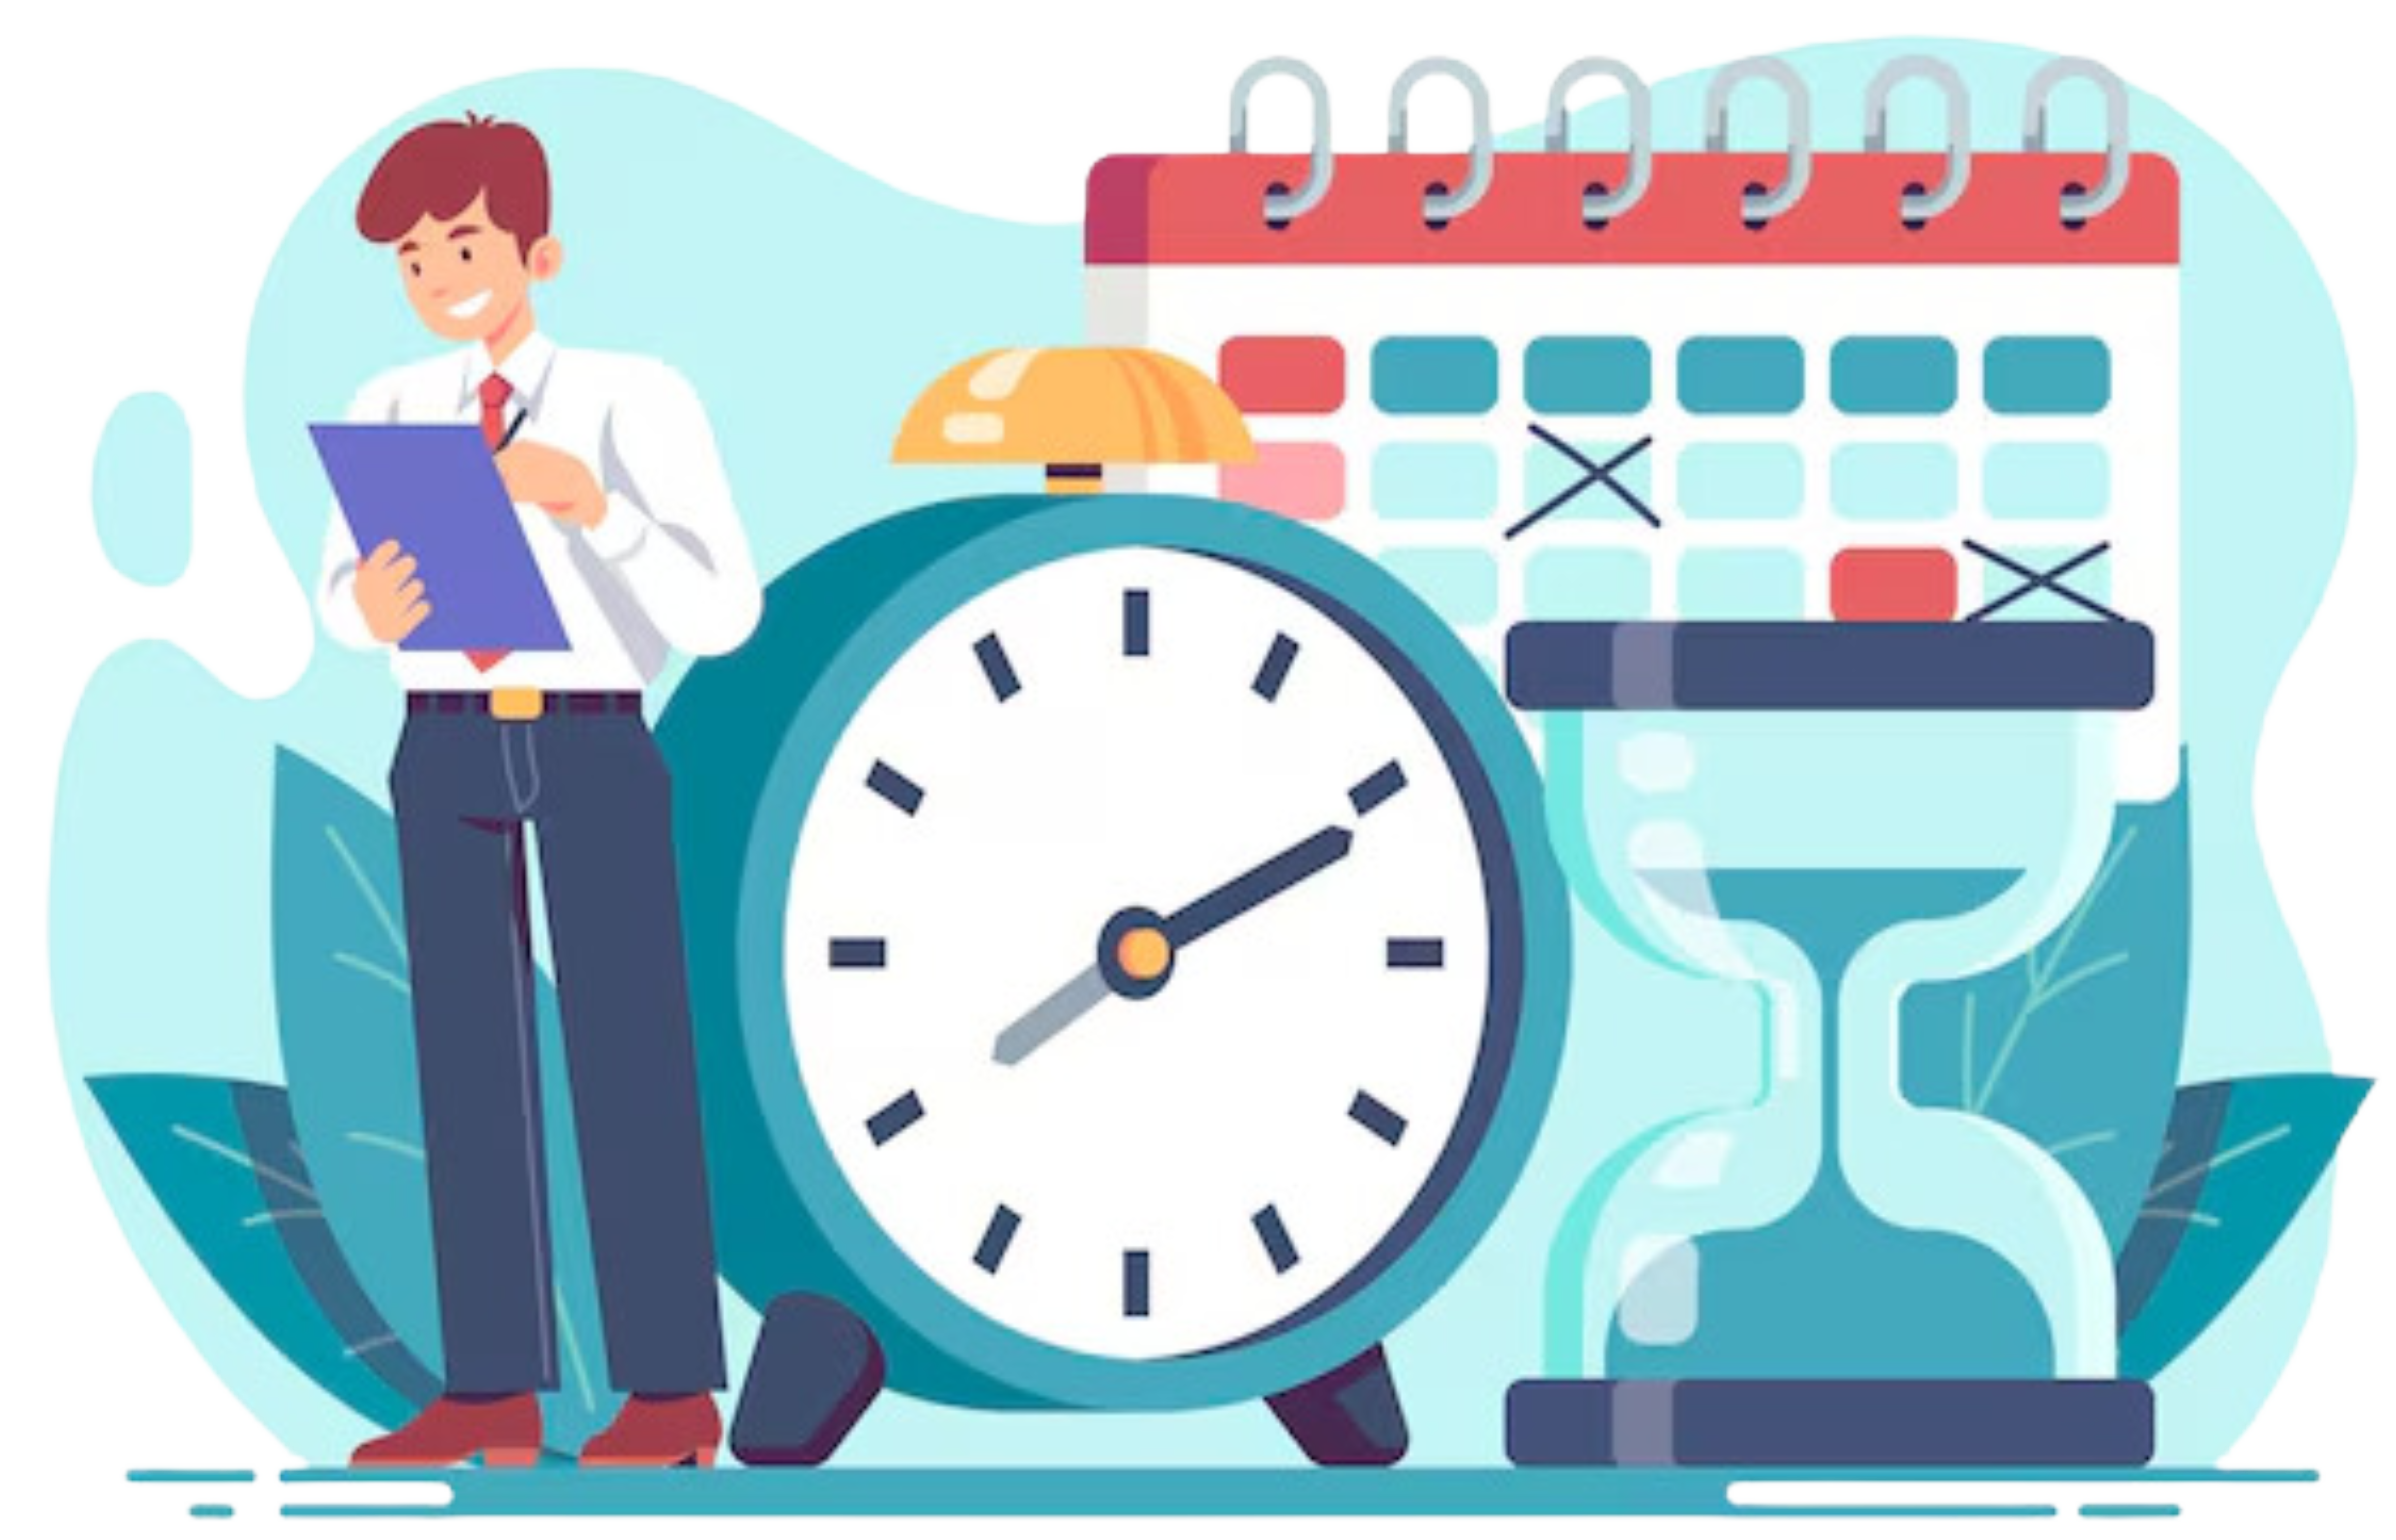 Imagen que hace referencia al control horario en el trabajo mostrando un trabajador junto a dos relojes y un calendario